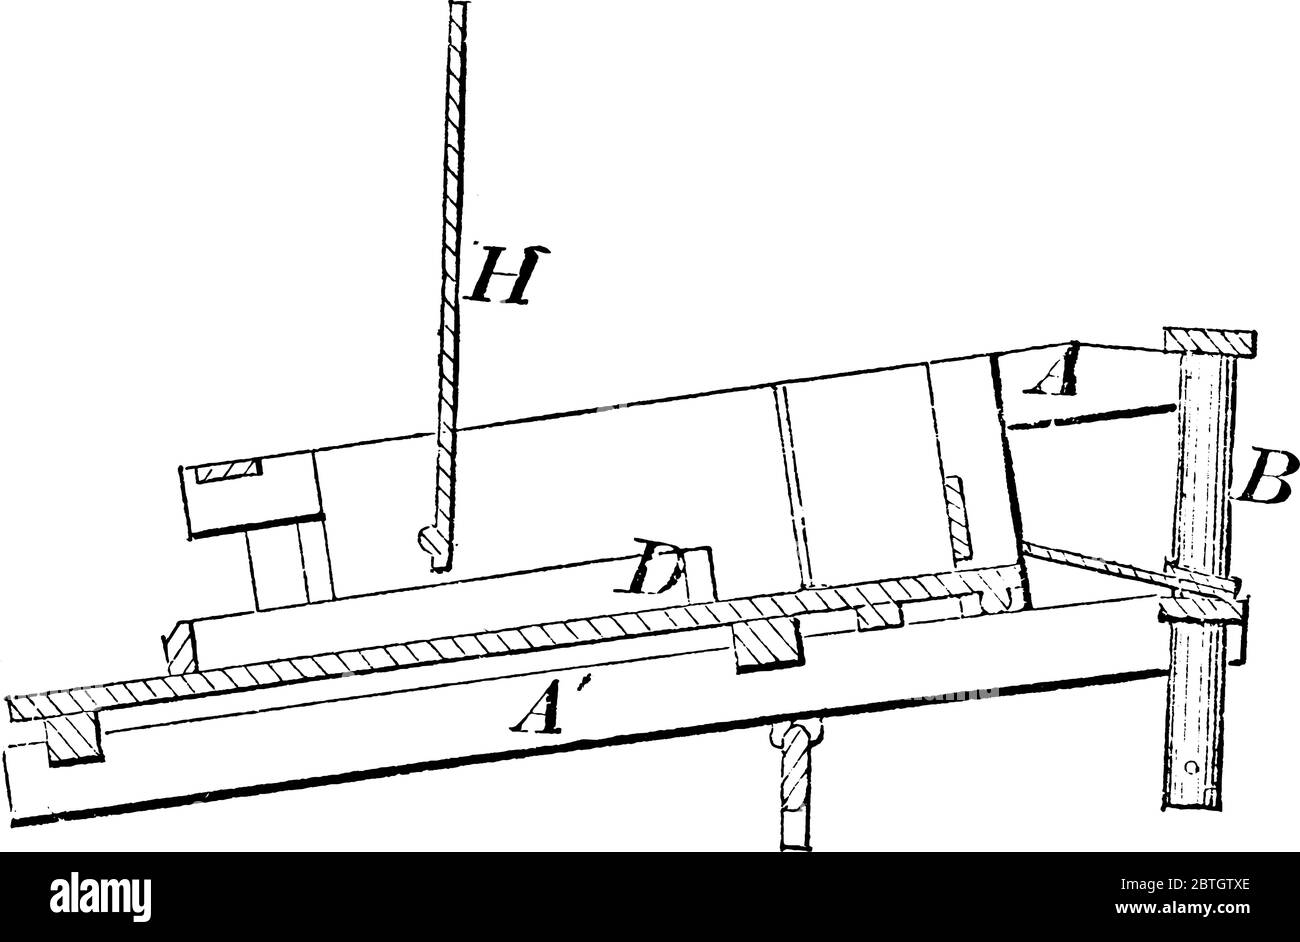 Diagramm einer Druckmaschine verwendet, um zu drucken, in der eine Rolle auf der Oberfläche, wo Tinte verwendet wird, um aufzutragen rotieren, Vintage-Linie Zeichnung oder Gravur Stock Vektor